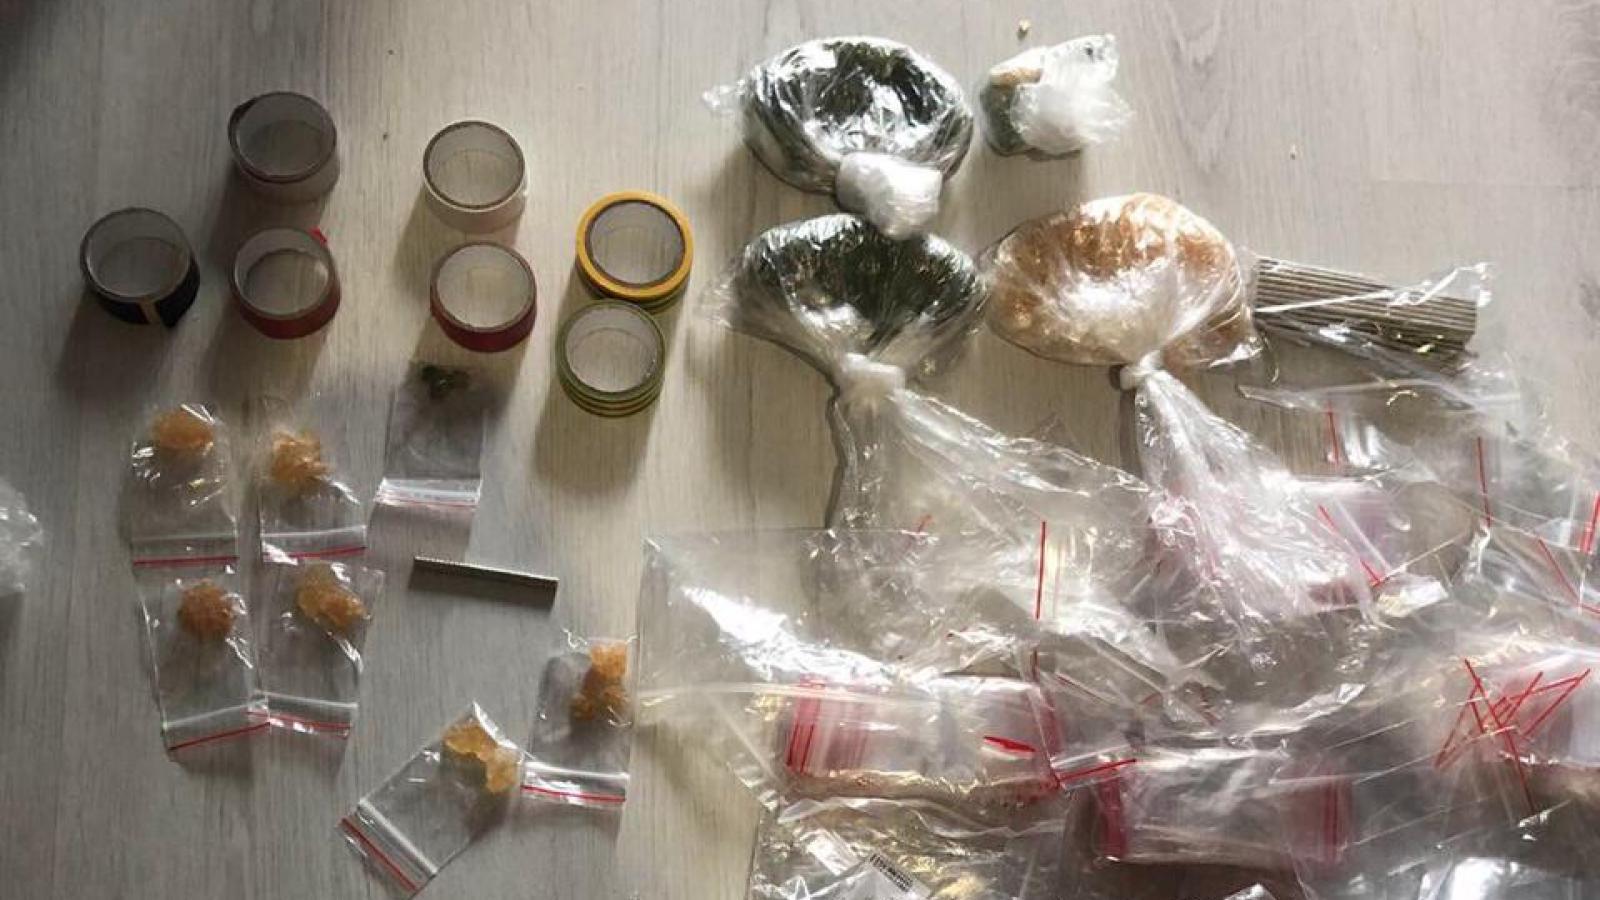 У 17-летней девушки нашли более 300 г наркотиков